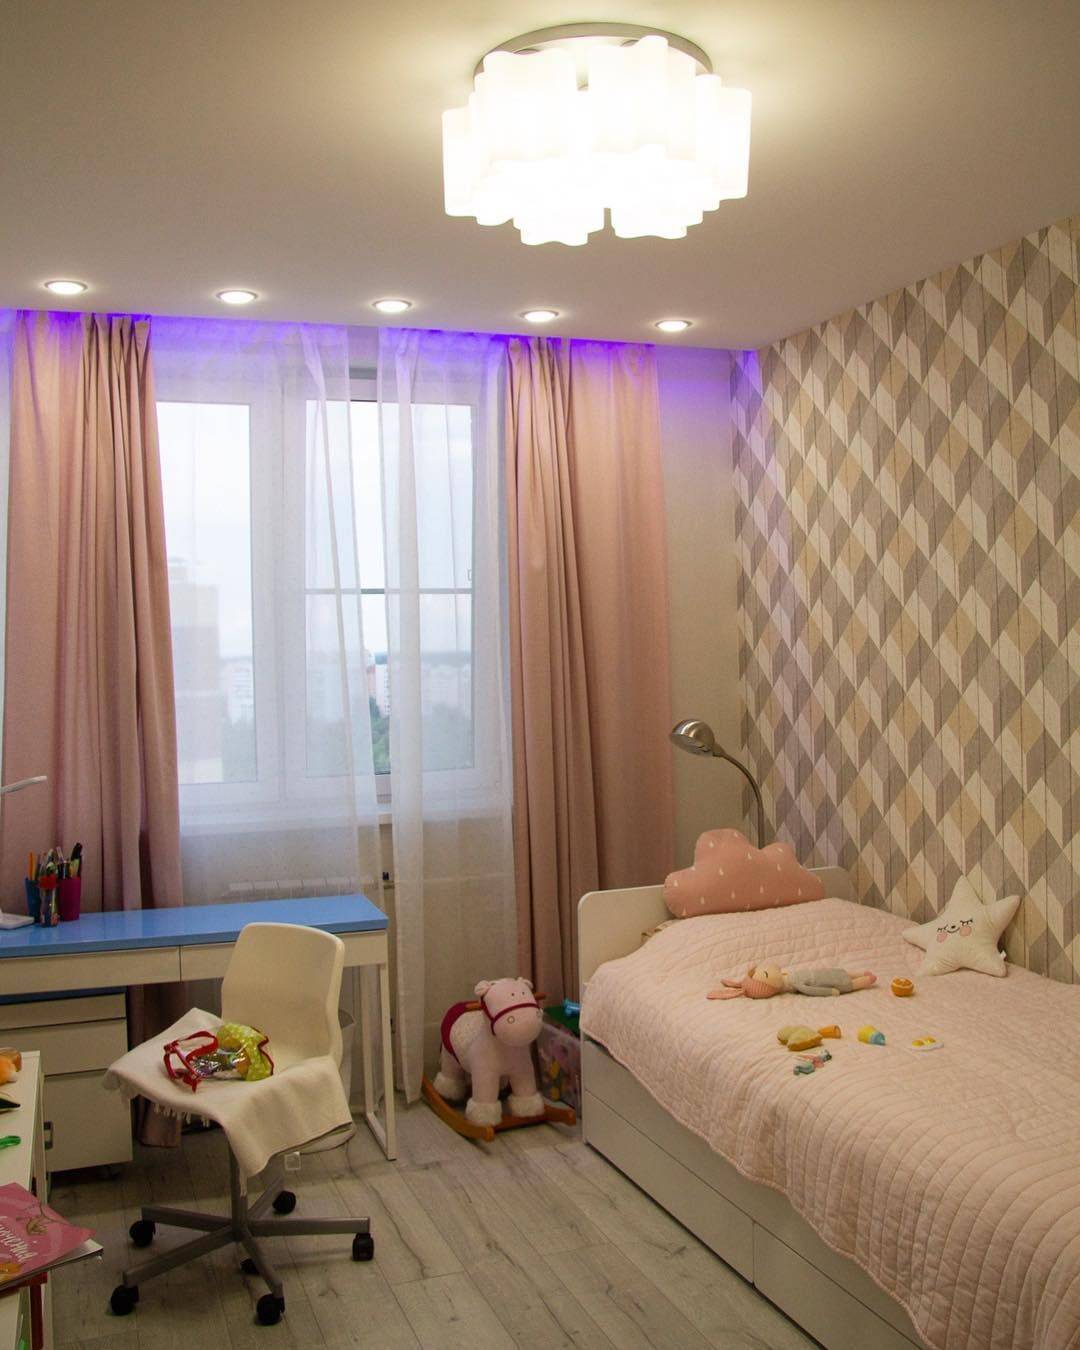 Рекомендации по устройству освещения в детской комнате | parent-portal.ru